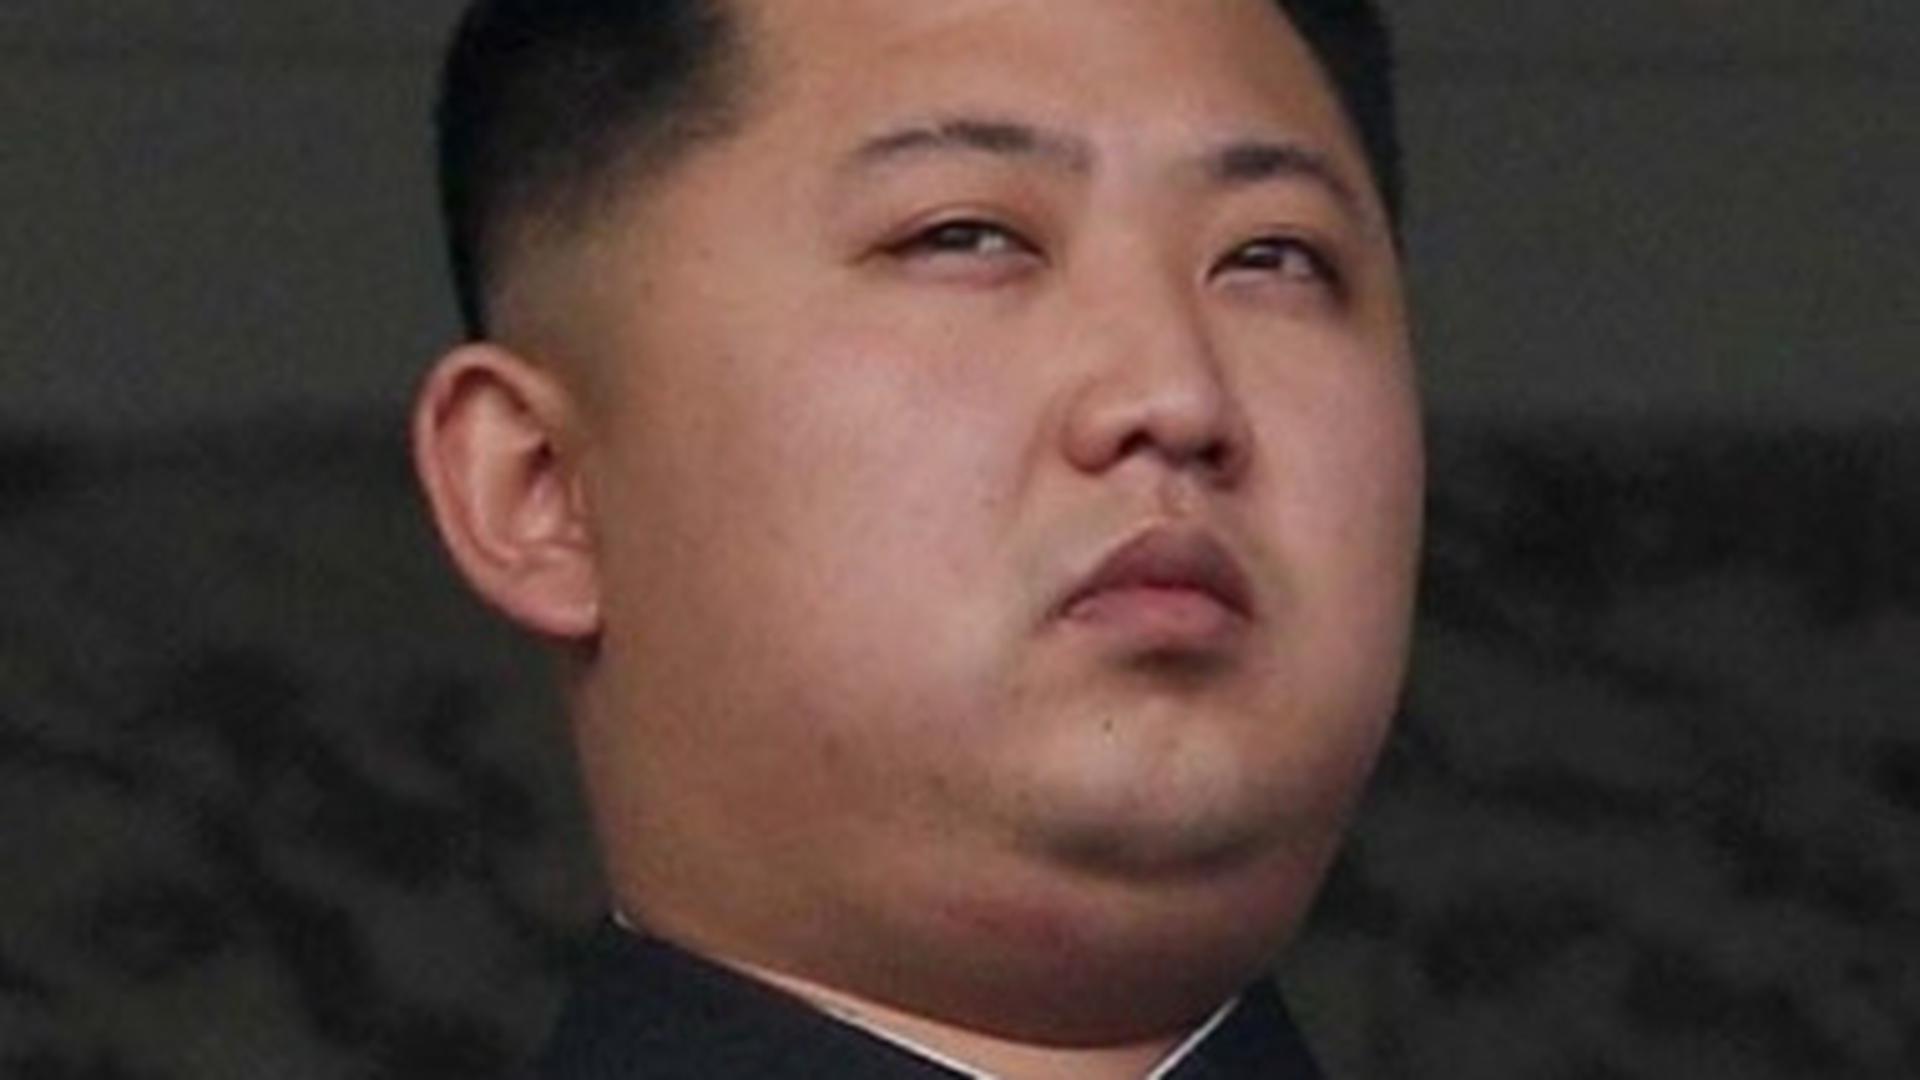 Kim Jong-un é o líder supremo da Coreia do Norte desde 11 de Abril de 2012. Sucedeu ao seu pai Kim Jong-Il, que esteve no poder de 1994 até à sua morte, em 17 de Dezembro de 2011